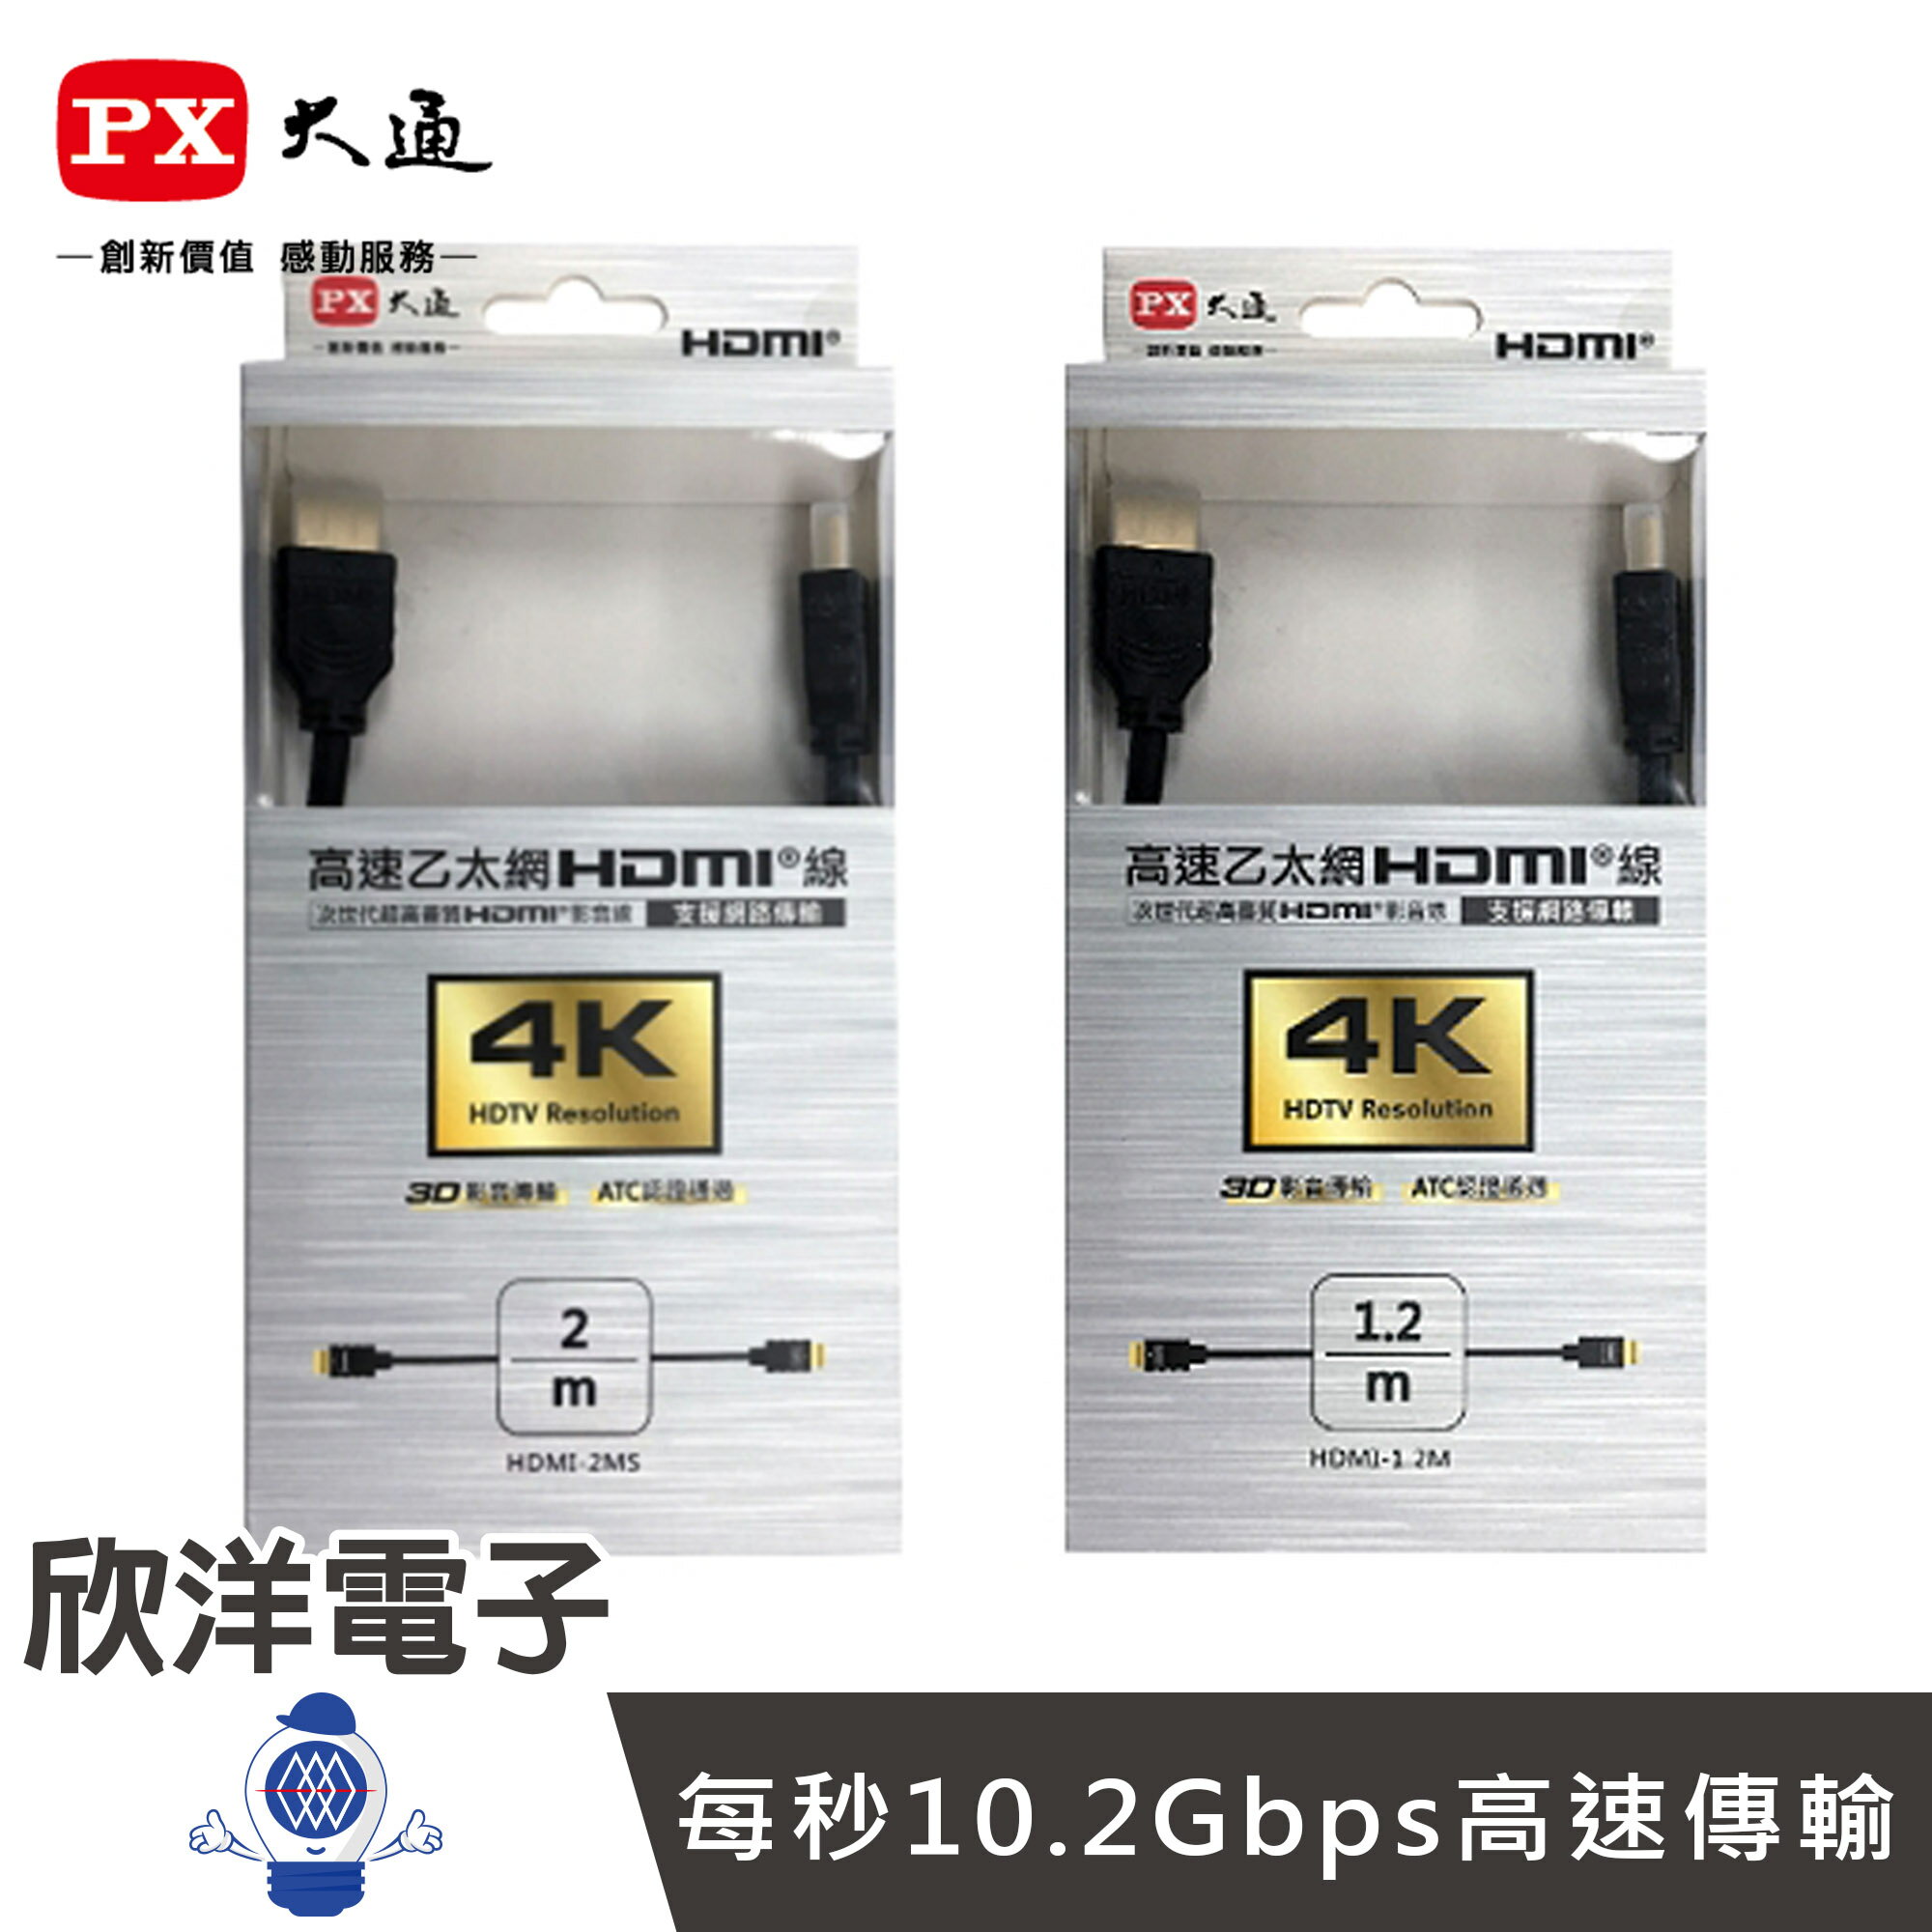 ※ 欣洋電子 ※ PX大通高速乙太網3D超高解析HDMI 1.4版影音傳輸線 2米 (HDMI-2MS)